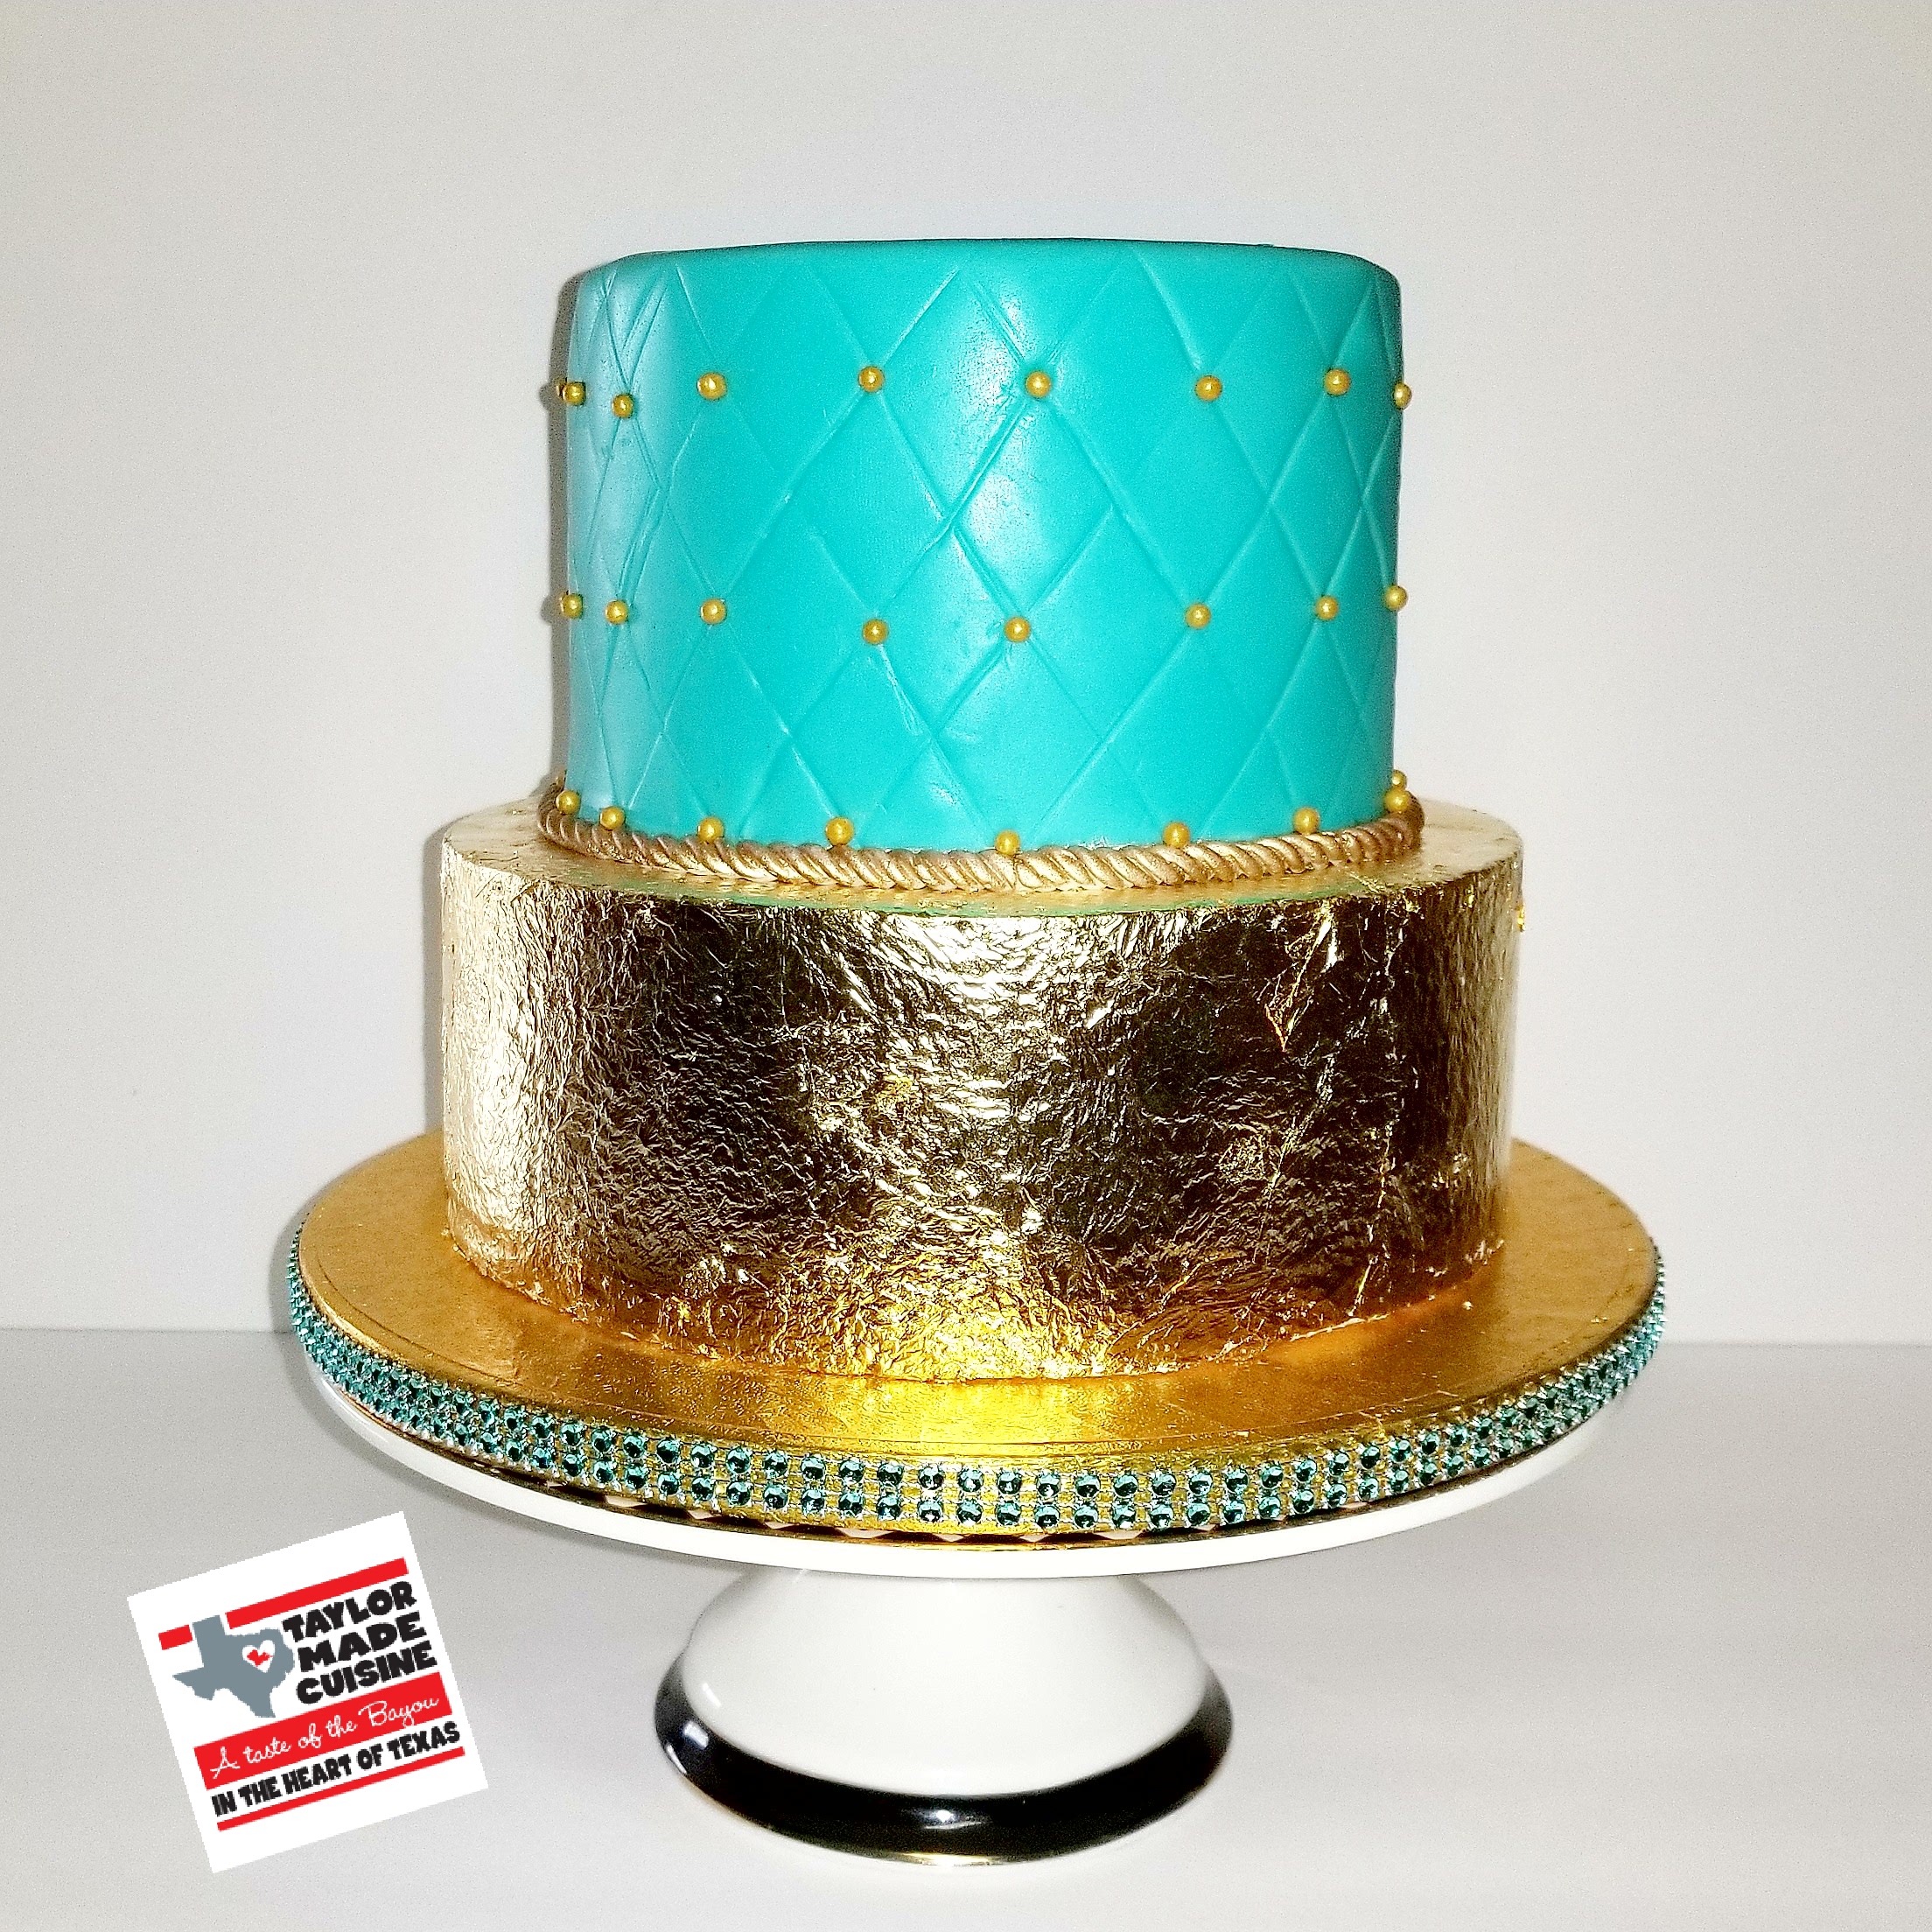 Tiffany Blue & Gold Birthday Cake